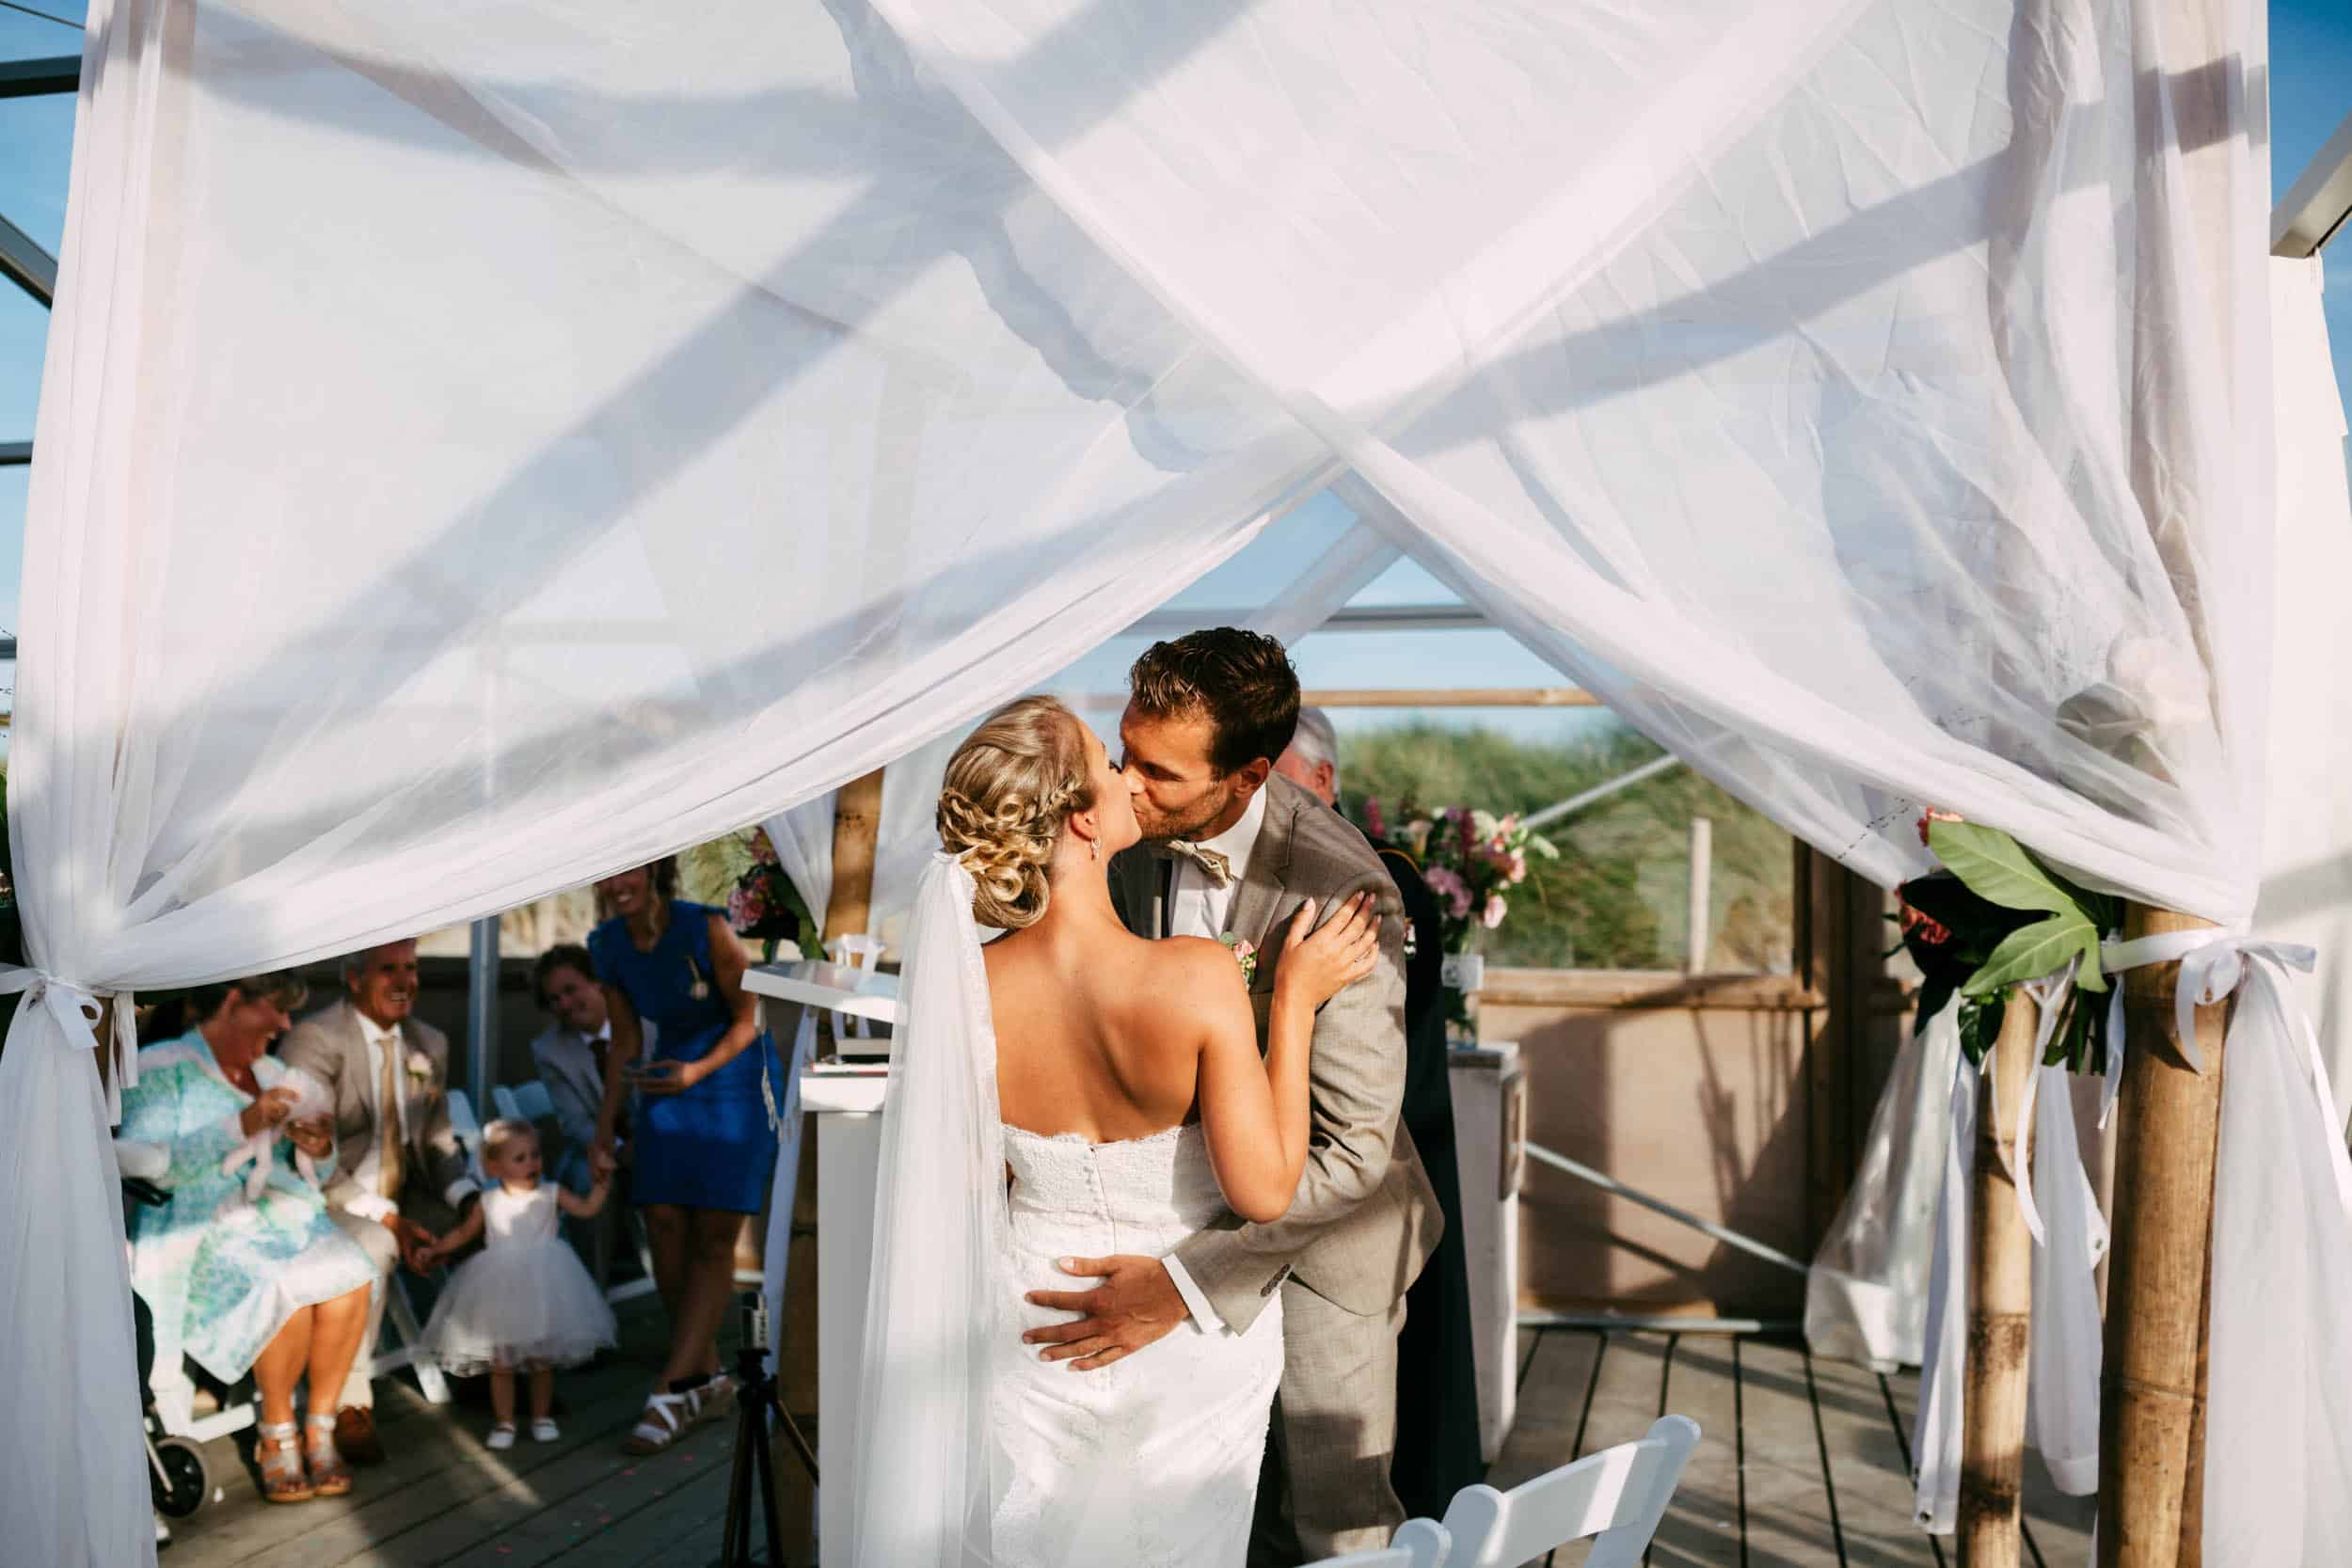 Een bruid en bruidegom kussen elkaar onder een tent tijdens hun huwelijksceremonie.